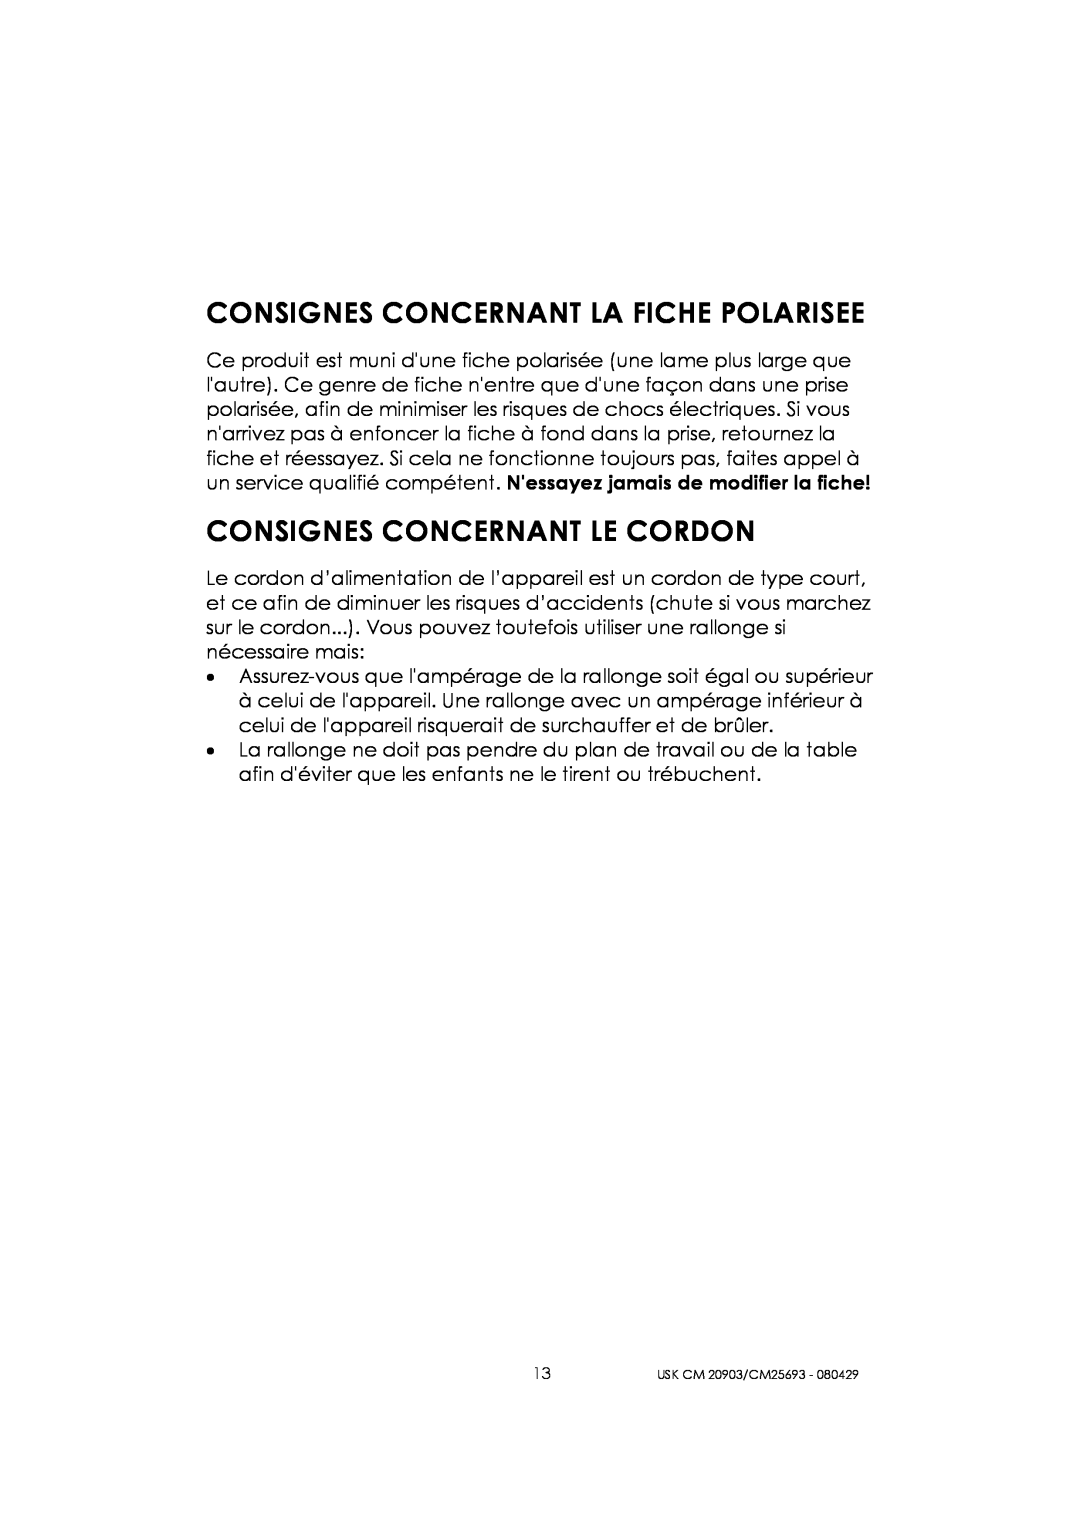 Kalorik CM 20903, CM 25693 manual Consignes Concernant La Fiche Polarisee, Consignes Concernant Le Cordon 